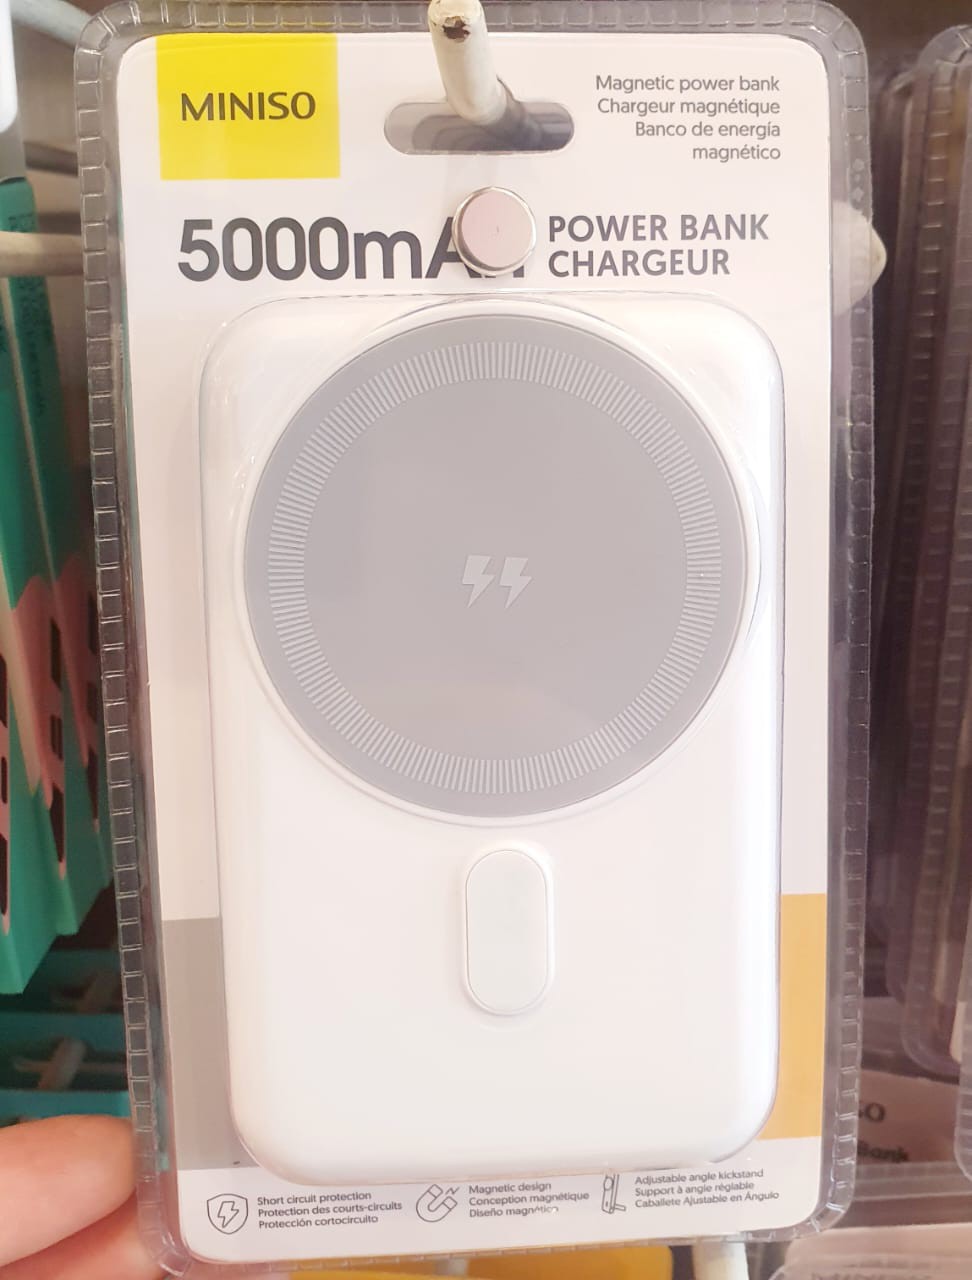 ພາວເວີ້ແບັງ Power Bank Chargeur ຍີ່ຫໍ້: MINISO ລຸ້ນ: 5000mAh. ສາກເຂົ້າໄວ ແລະ ສະຖຽນ ເປັນແບັດສຳຮອງທີ່ດີ ບັນຈຸໄດ້ຫຼາຍ ພົກພາງ່າຍ 